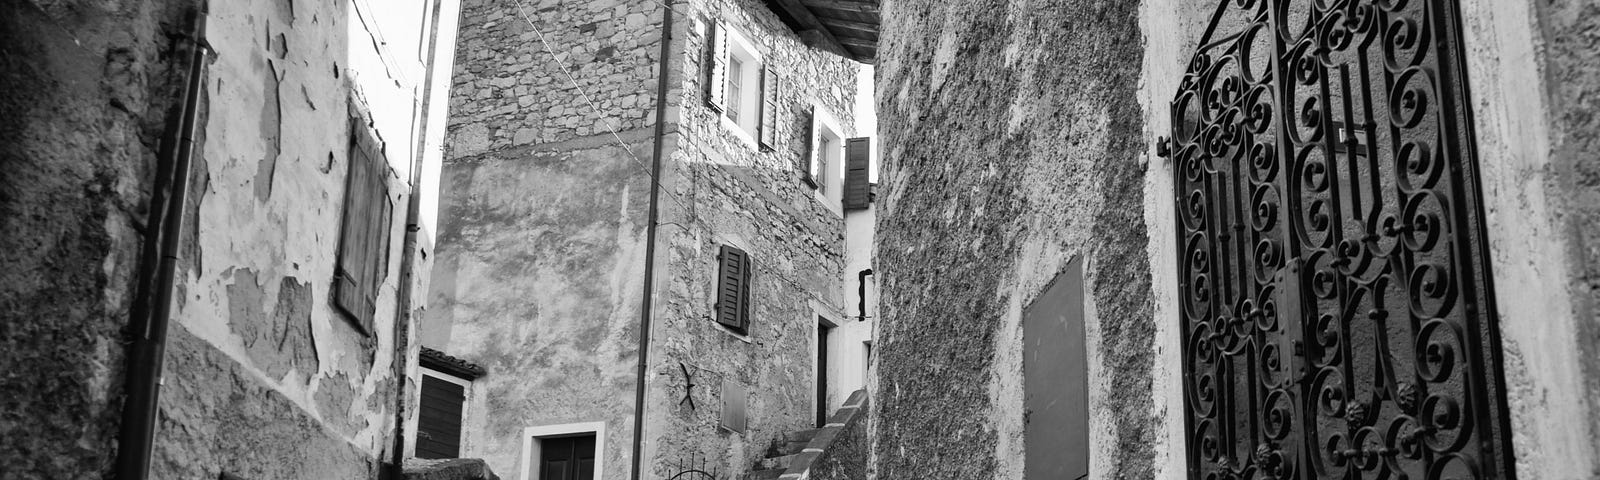 Tiny Village of Borgo